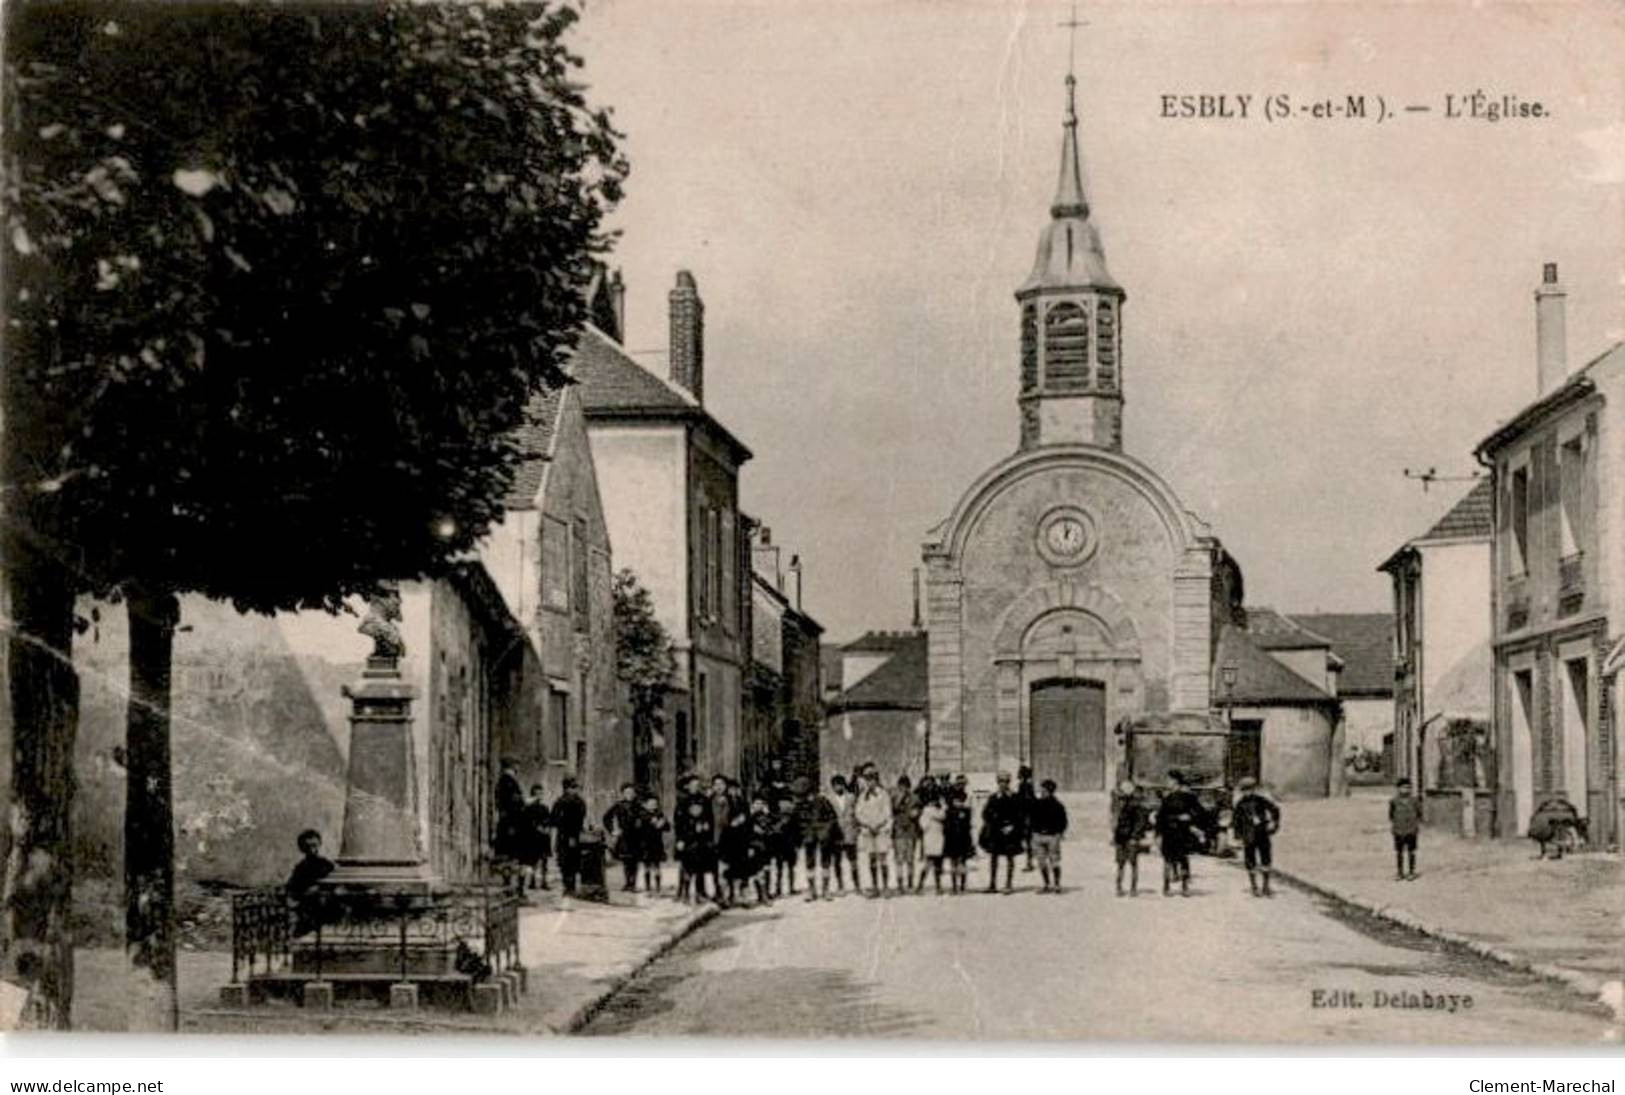 ESBLY: L'église - état - Esbly